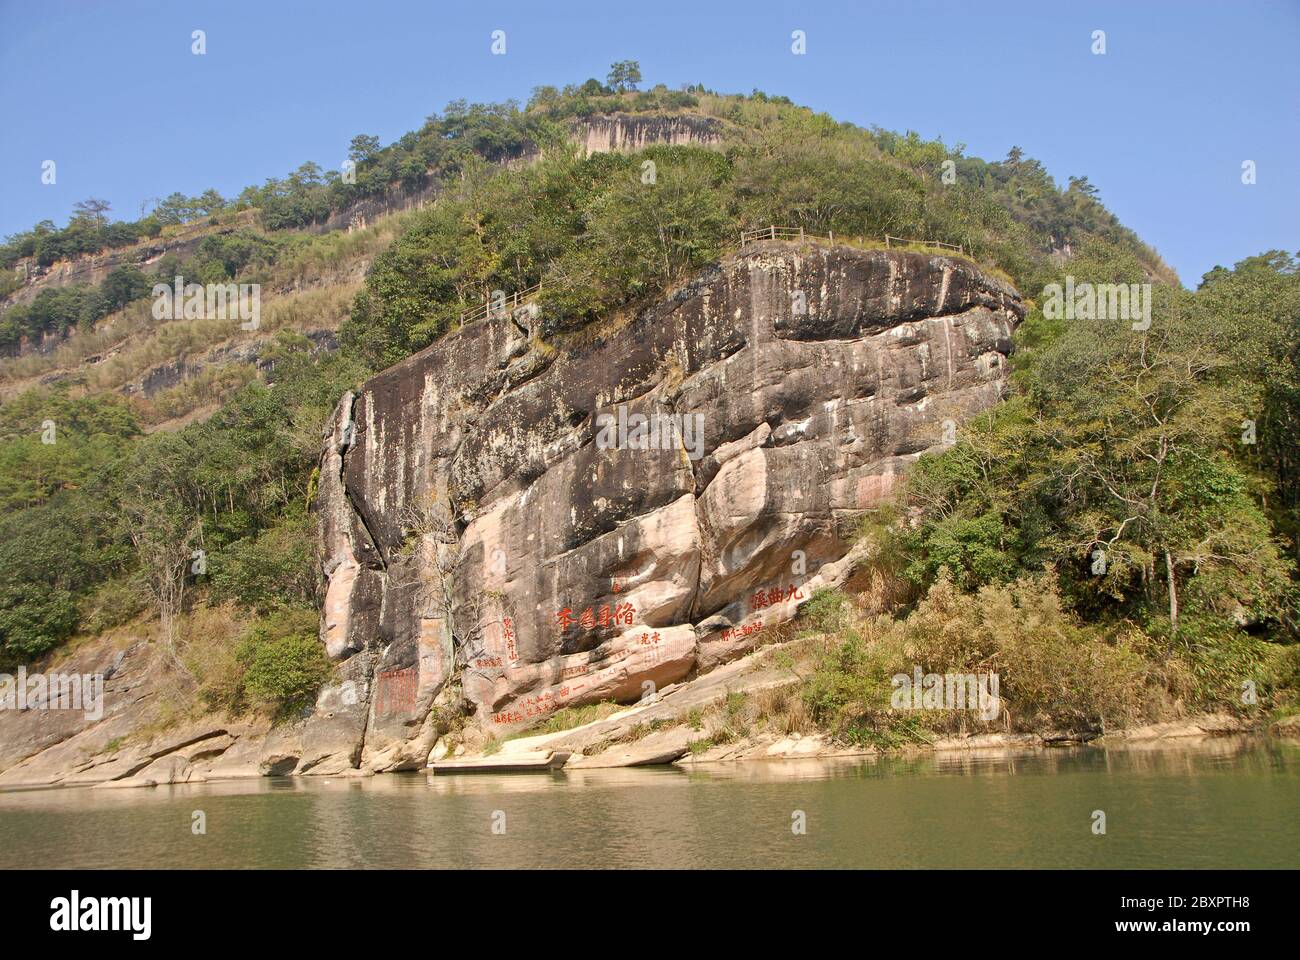 Wuyishan Gebirge in der Provinz Fujian, China. Felsen mit Inschriften und Dawang (Great King) Peak vom Nine Bends River oder dem Nine Twists Stream aus gesehen. Stockfoto